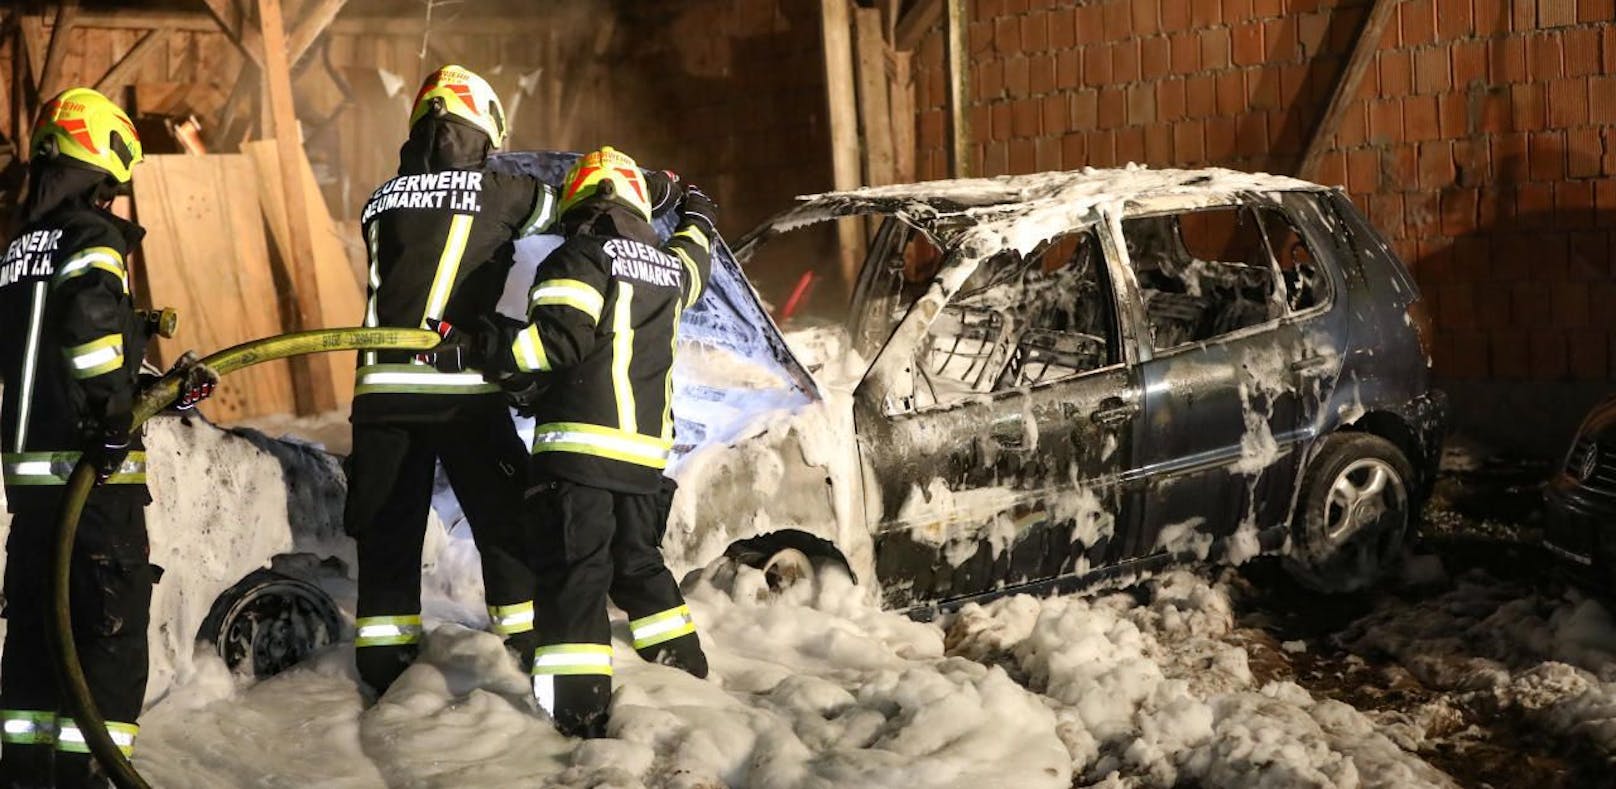 7 Feuerwehren löschten brennendes Auto vor Haus